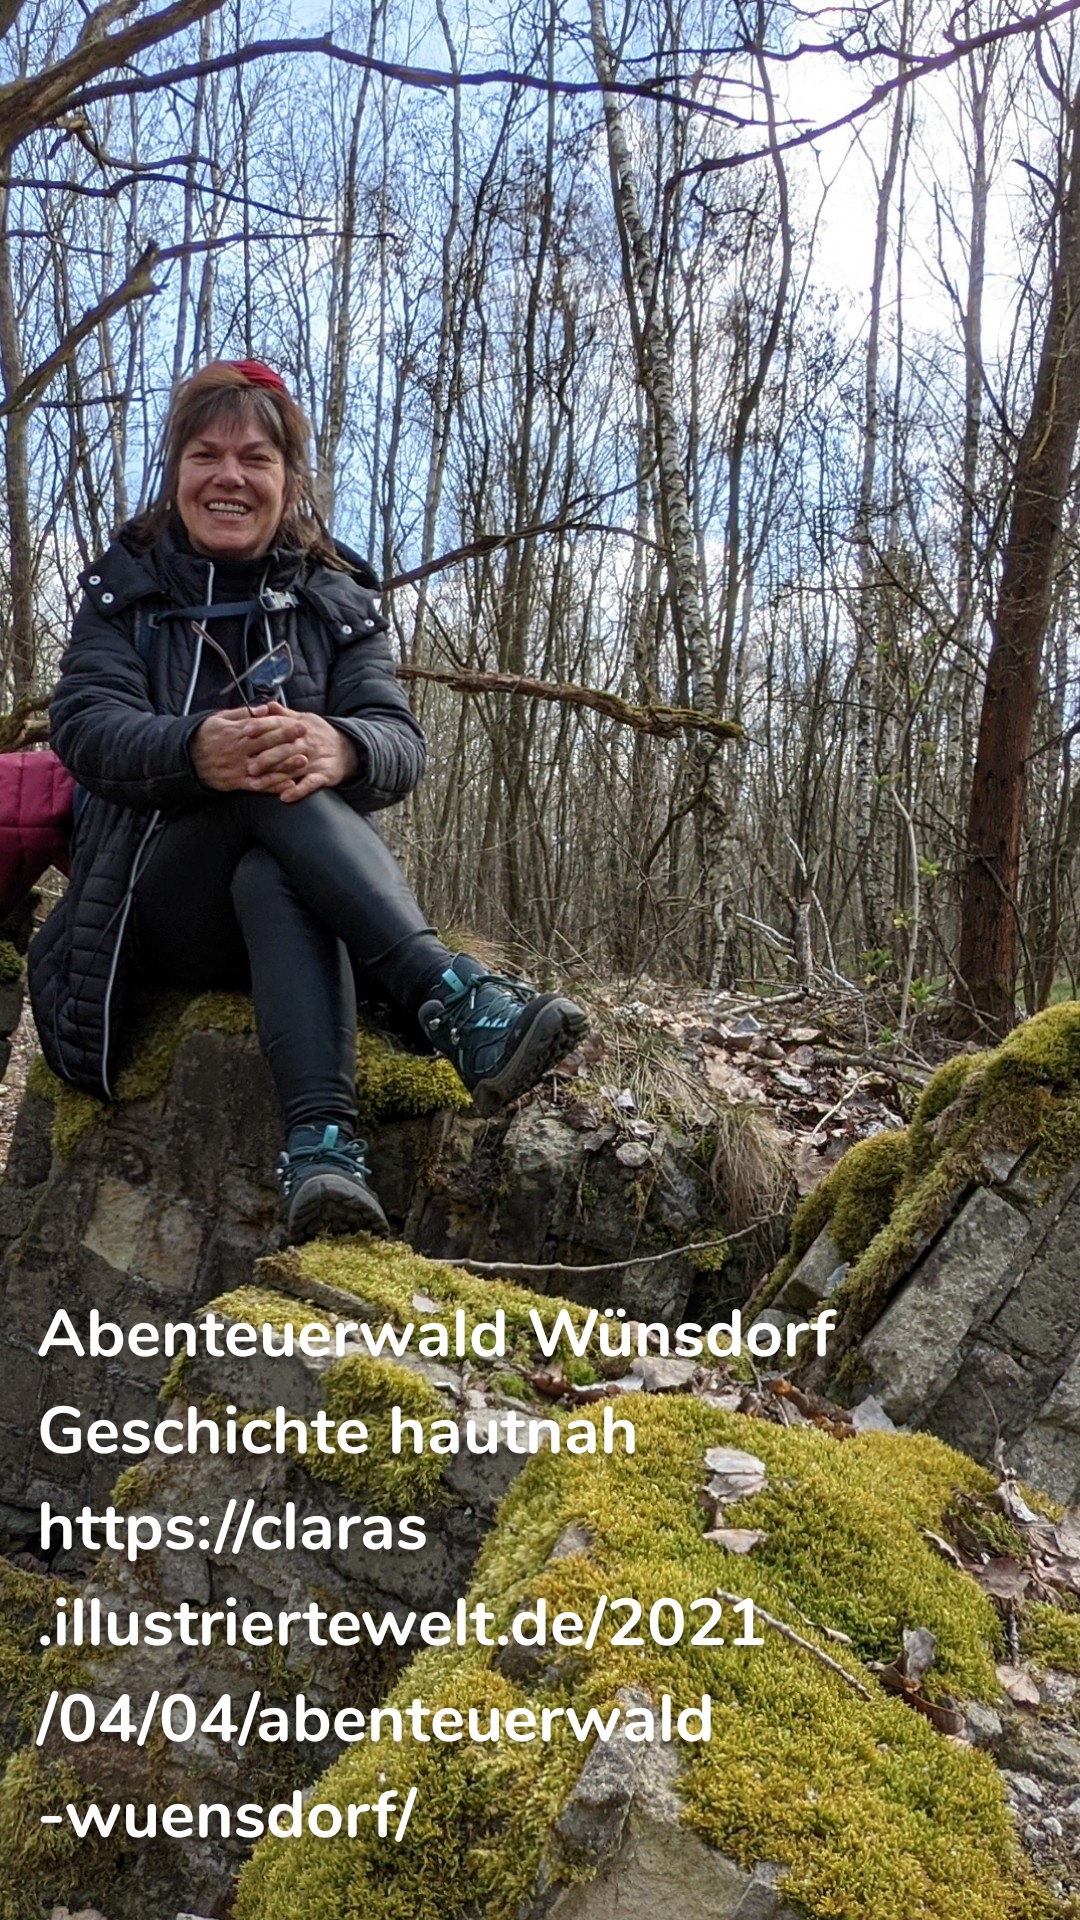 Abenteuerwald Wünsdorf Geschichte hautnah https://claras.illustriertewelt.de/2021/04/04/abenteuerwald-wuensdorf/